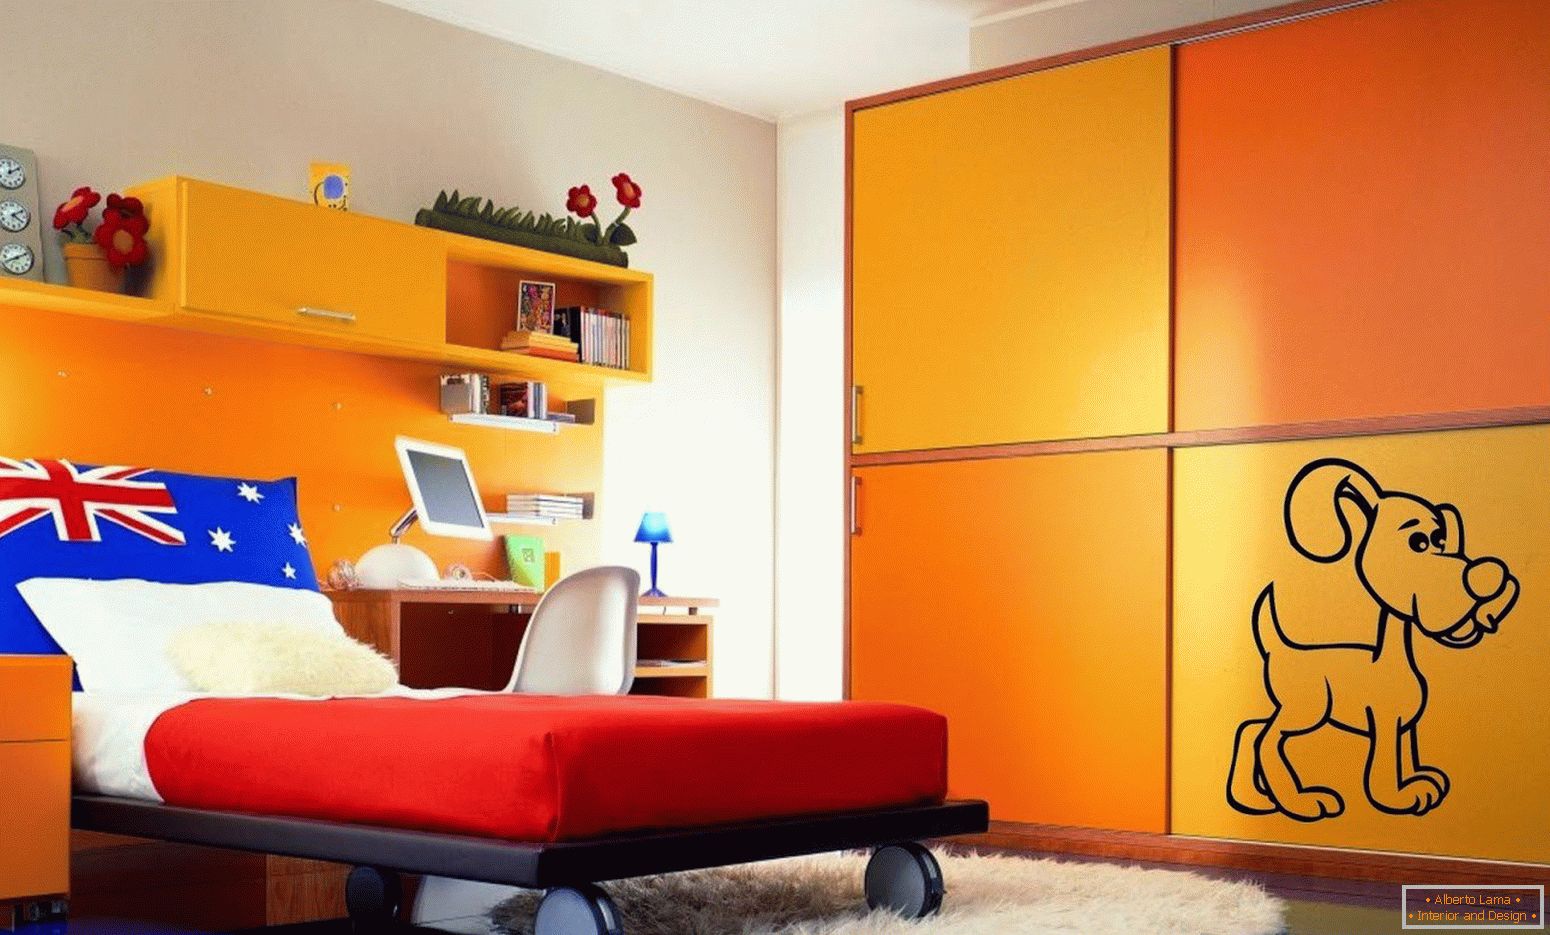 Möbel in orange Farbe